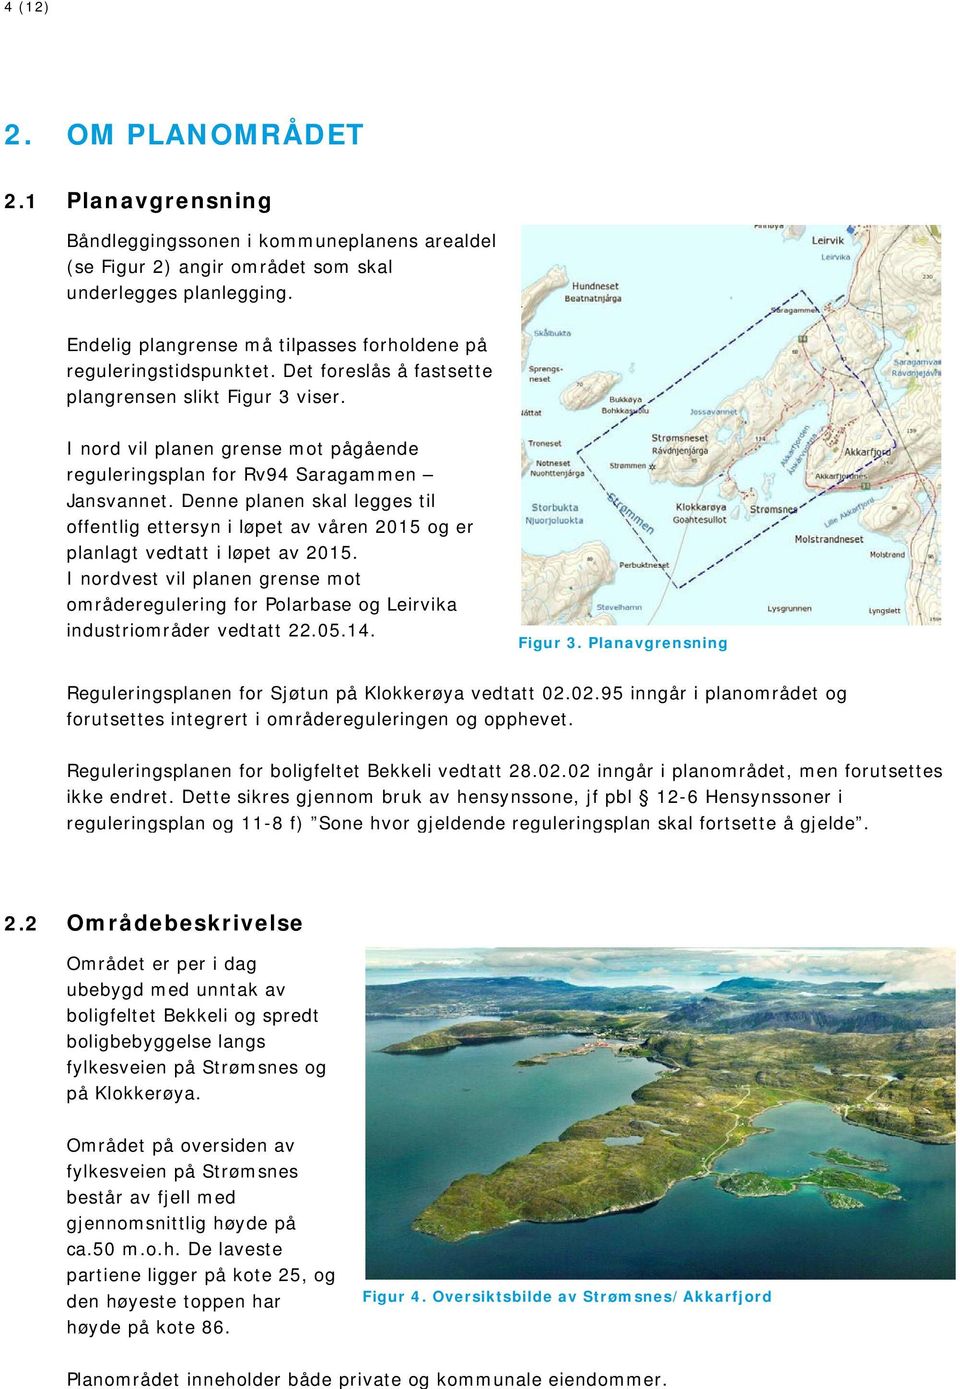 I nord vil planen grense mot pågående reguleringsplan for Rv94 Saragammen Jansvannet. Denne planen skal legges til offentlig ettersyn i løpet av våren 2015 og er planlagt vedtatt i løpet av 2015.